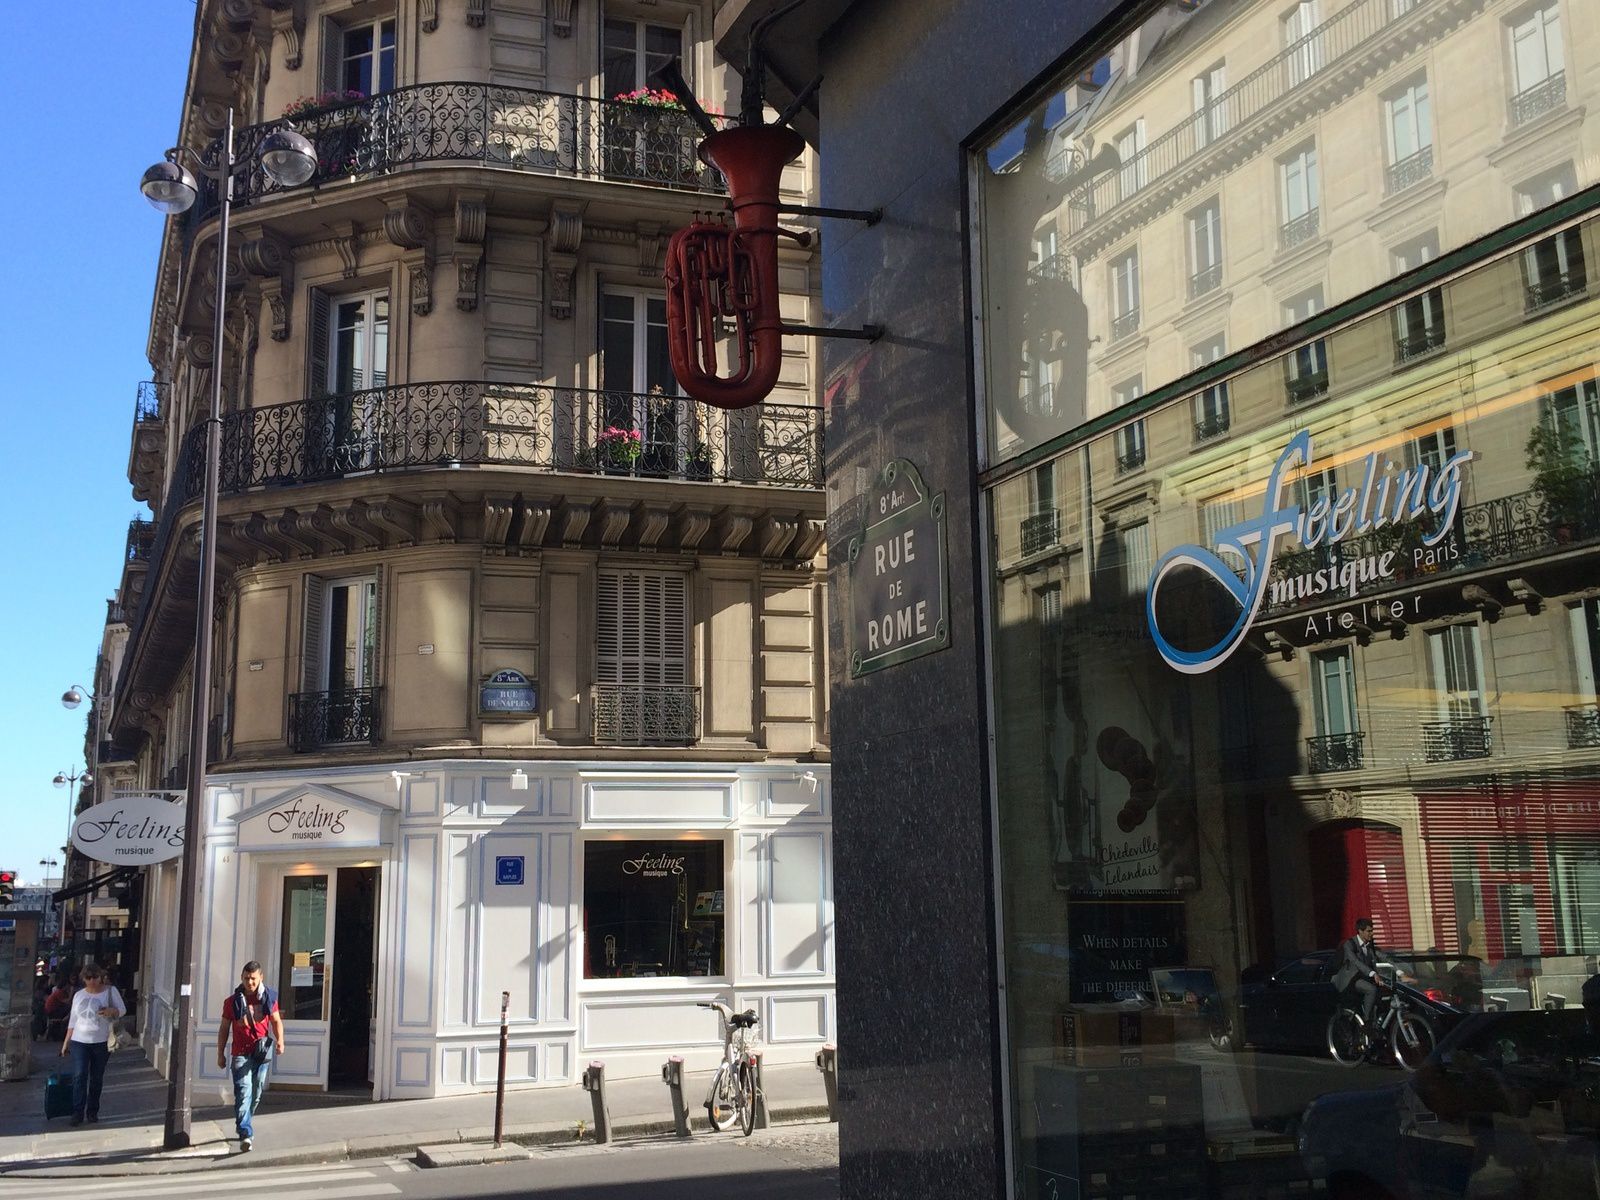 Feeling Musique, magasin et atelier, 61 rue de Rome, Paris 8è, un espace de découvertes et de rencontres unique.